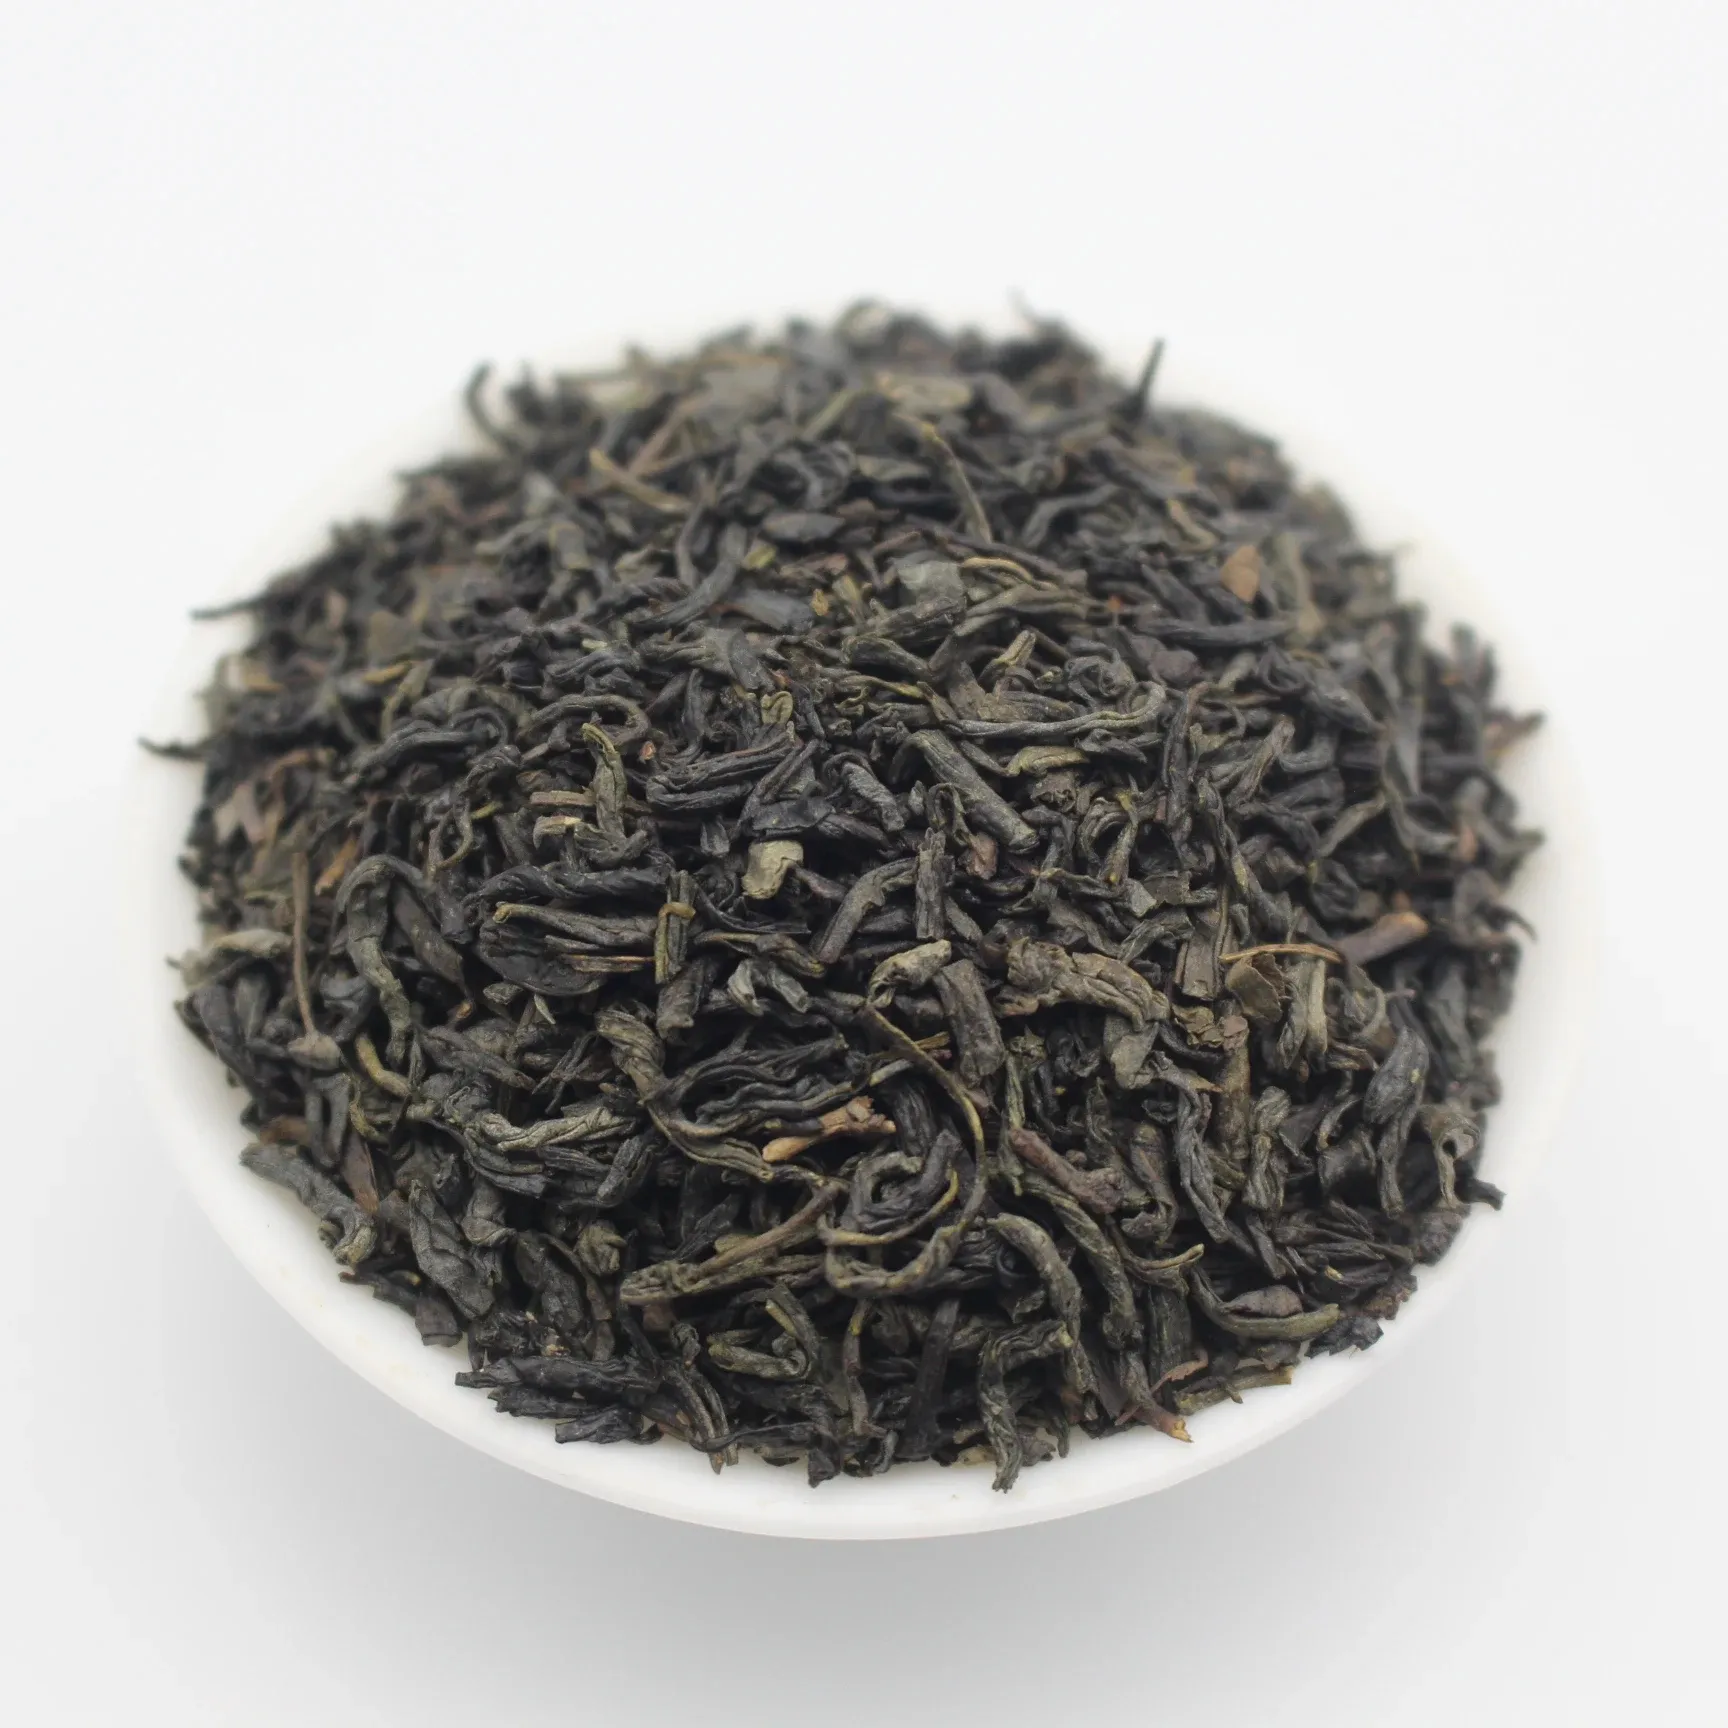 Muestra gratis de embalaje personalizado estándar de la UE a granel al por mayor fabricantes de té de alta calidad té verde Chunmee